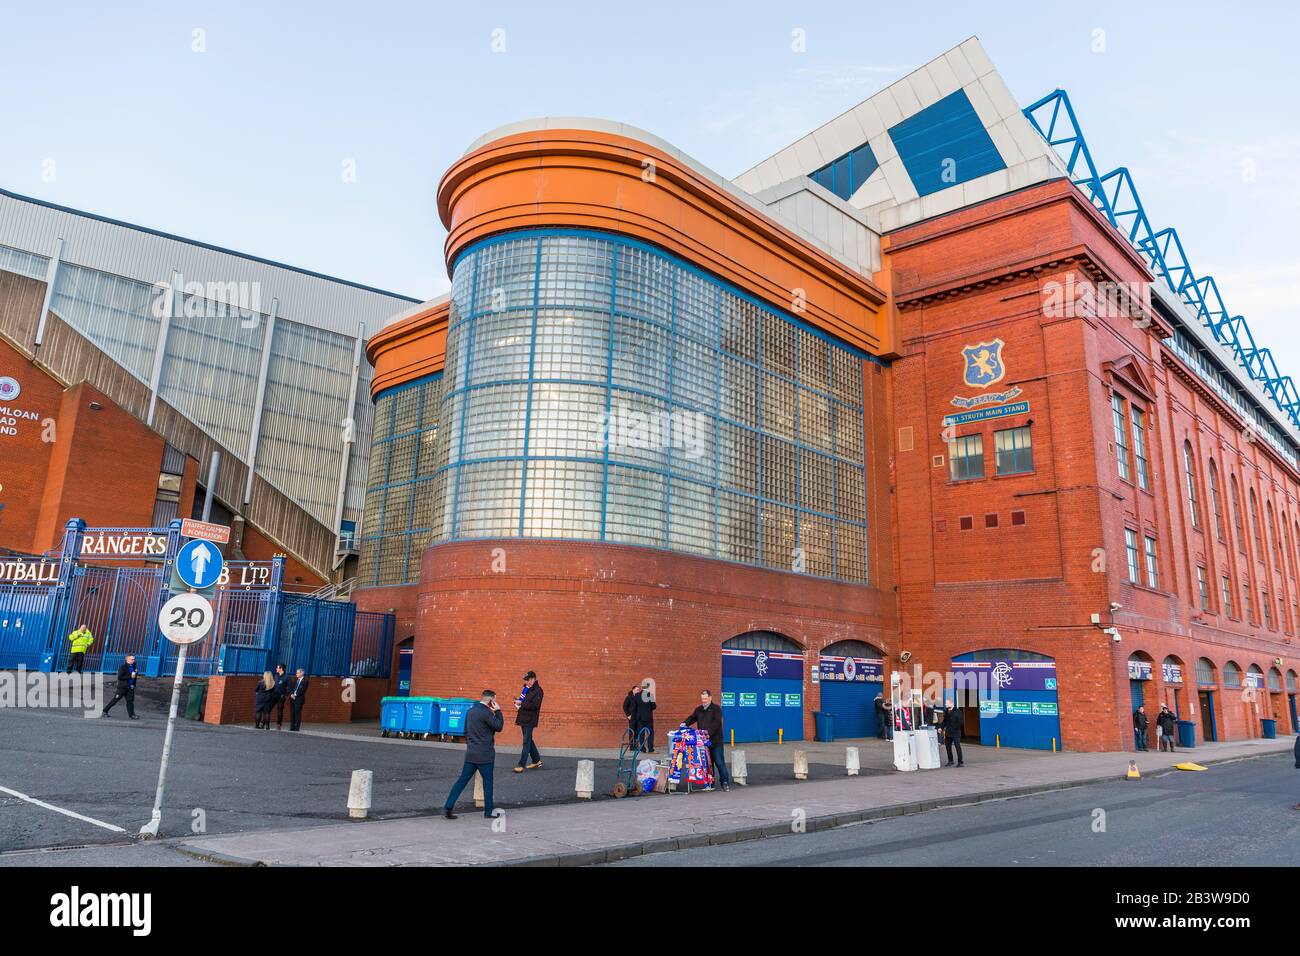 Stadio di calcio Ibrox, sede del Rangers Football Club, Govan, Glasgow, Scozia, Regno Unito Foto Stock